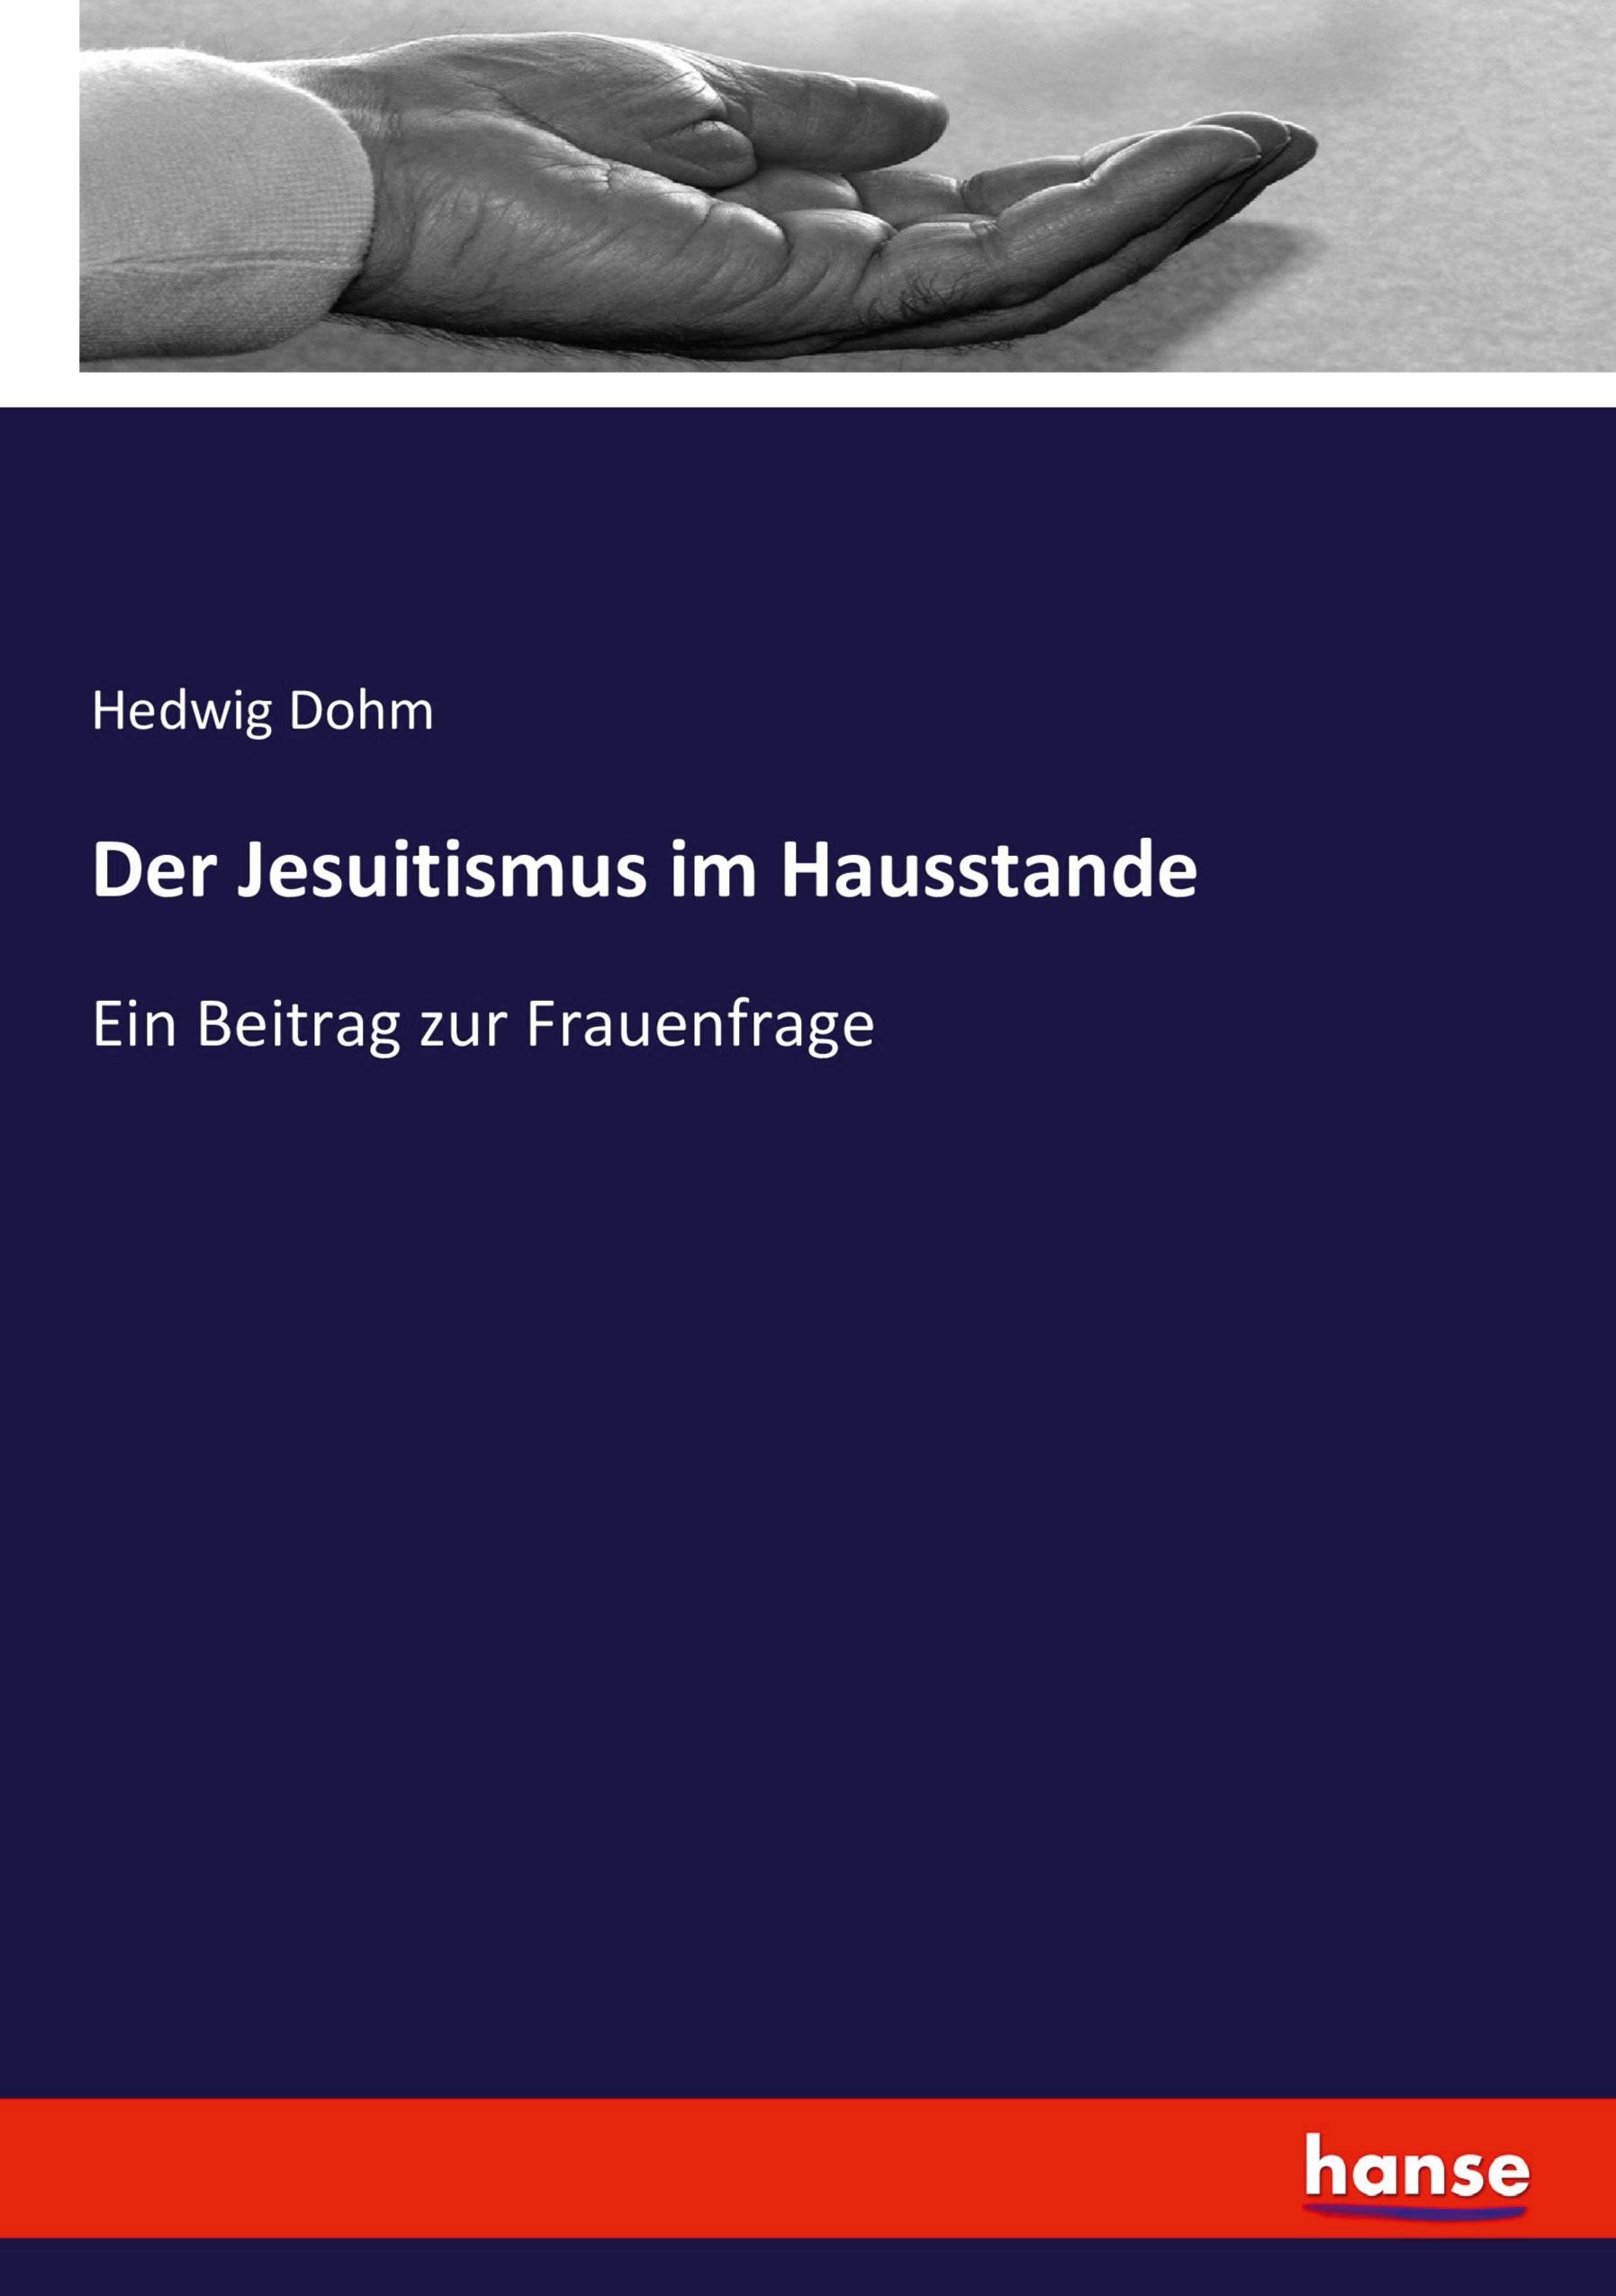 Der Jesuitismus im Hausstande | Ein Beitrag zur Frauenfrage | Hedwig Dohm | Taschenbuch | Paperback | 236 S. | Deutsch | 2022 | hansebooks | EAN 9783743460911 - Dohm, Hedwig